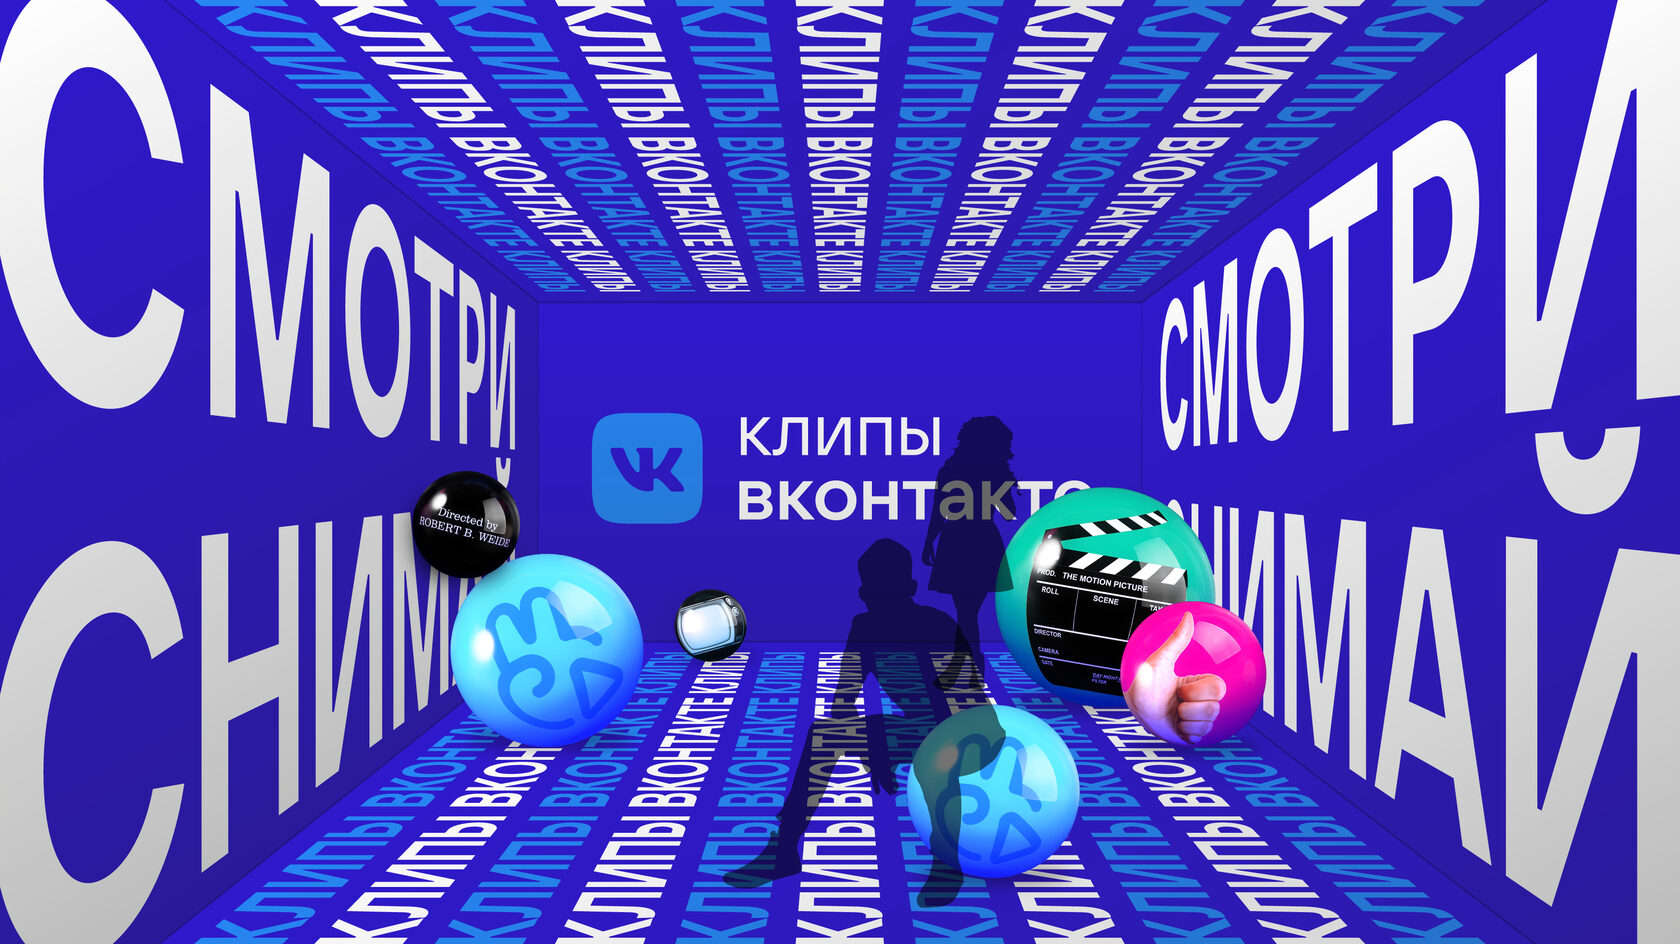 17 идей контента для мероприятия ВКонтакте, Facebook* и Instagram**